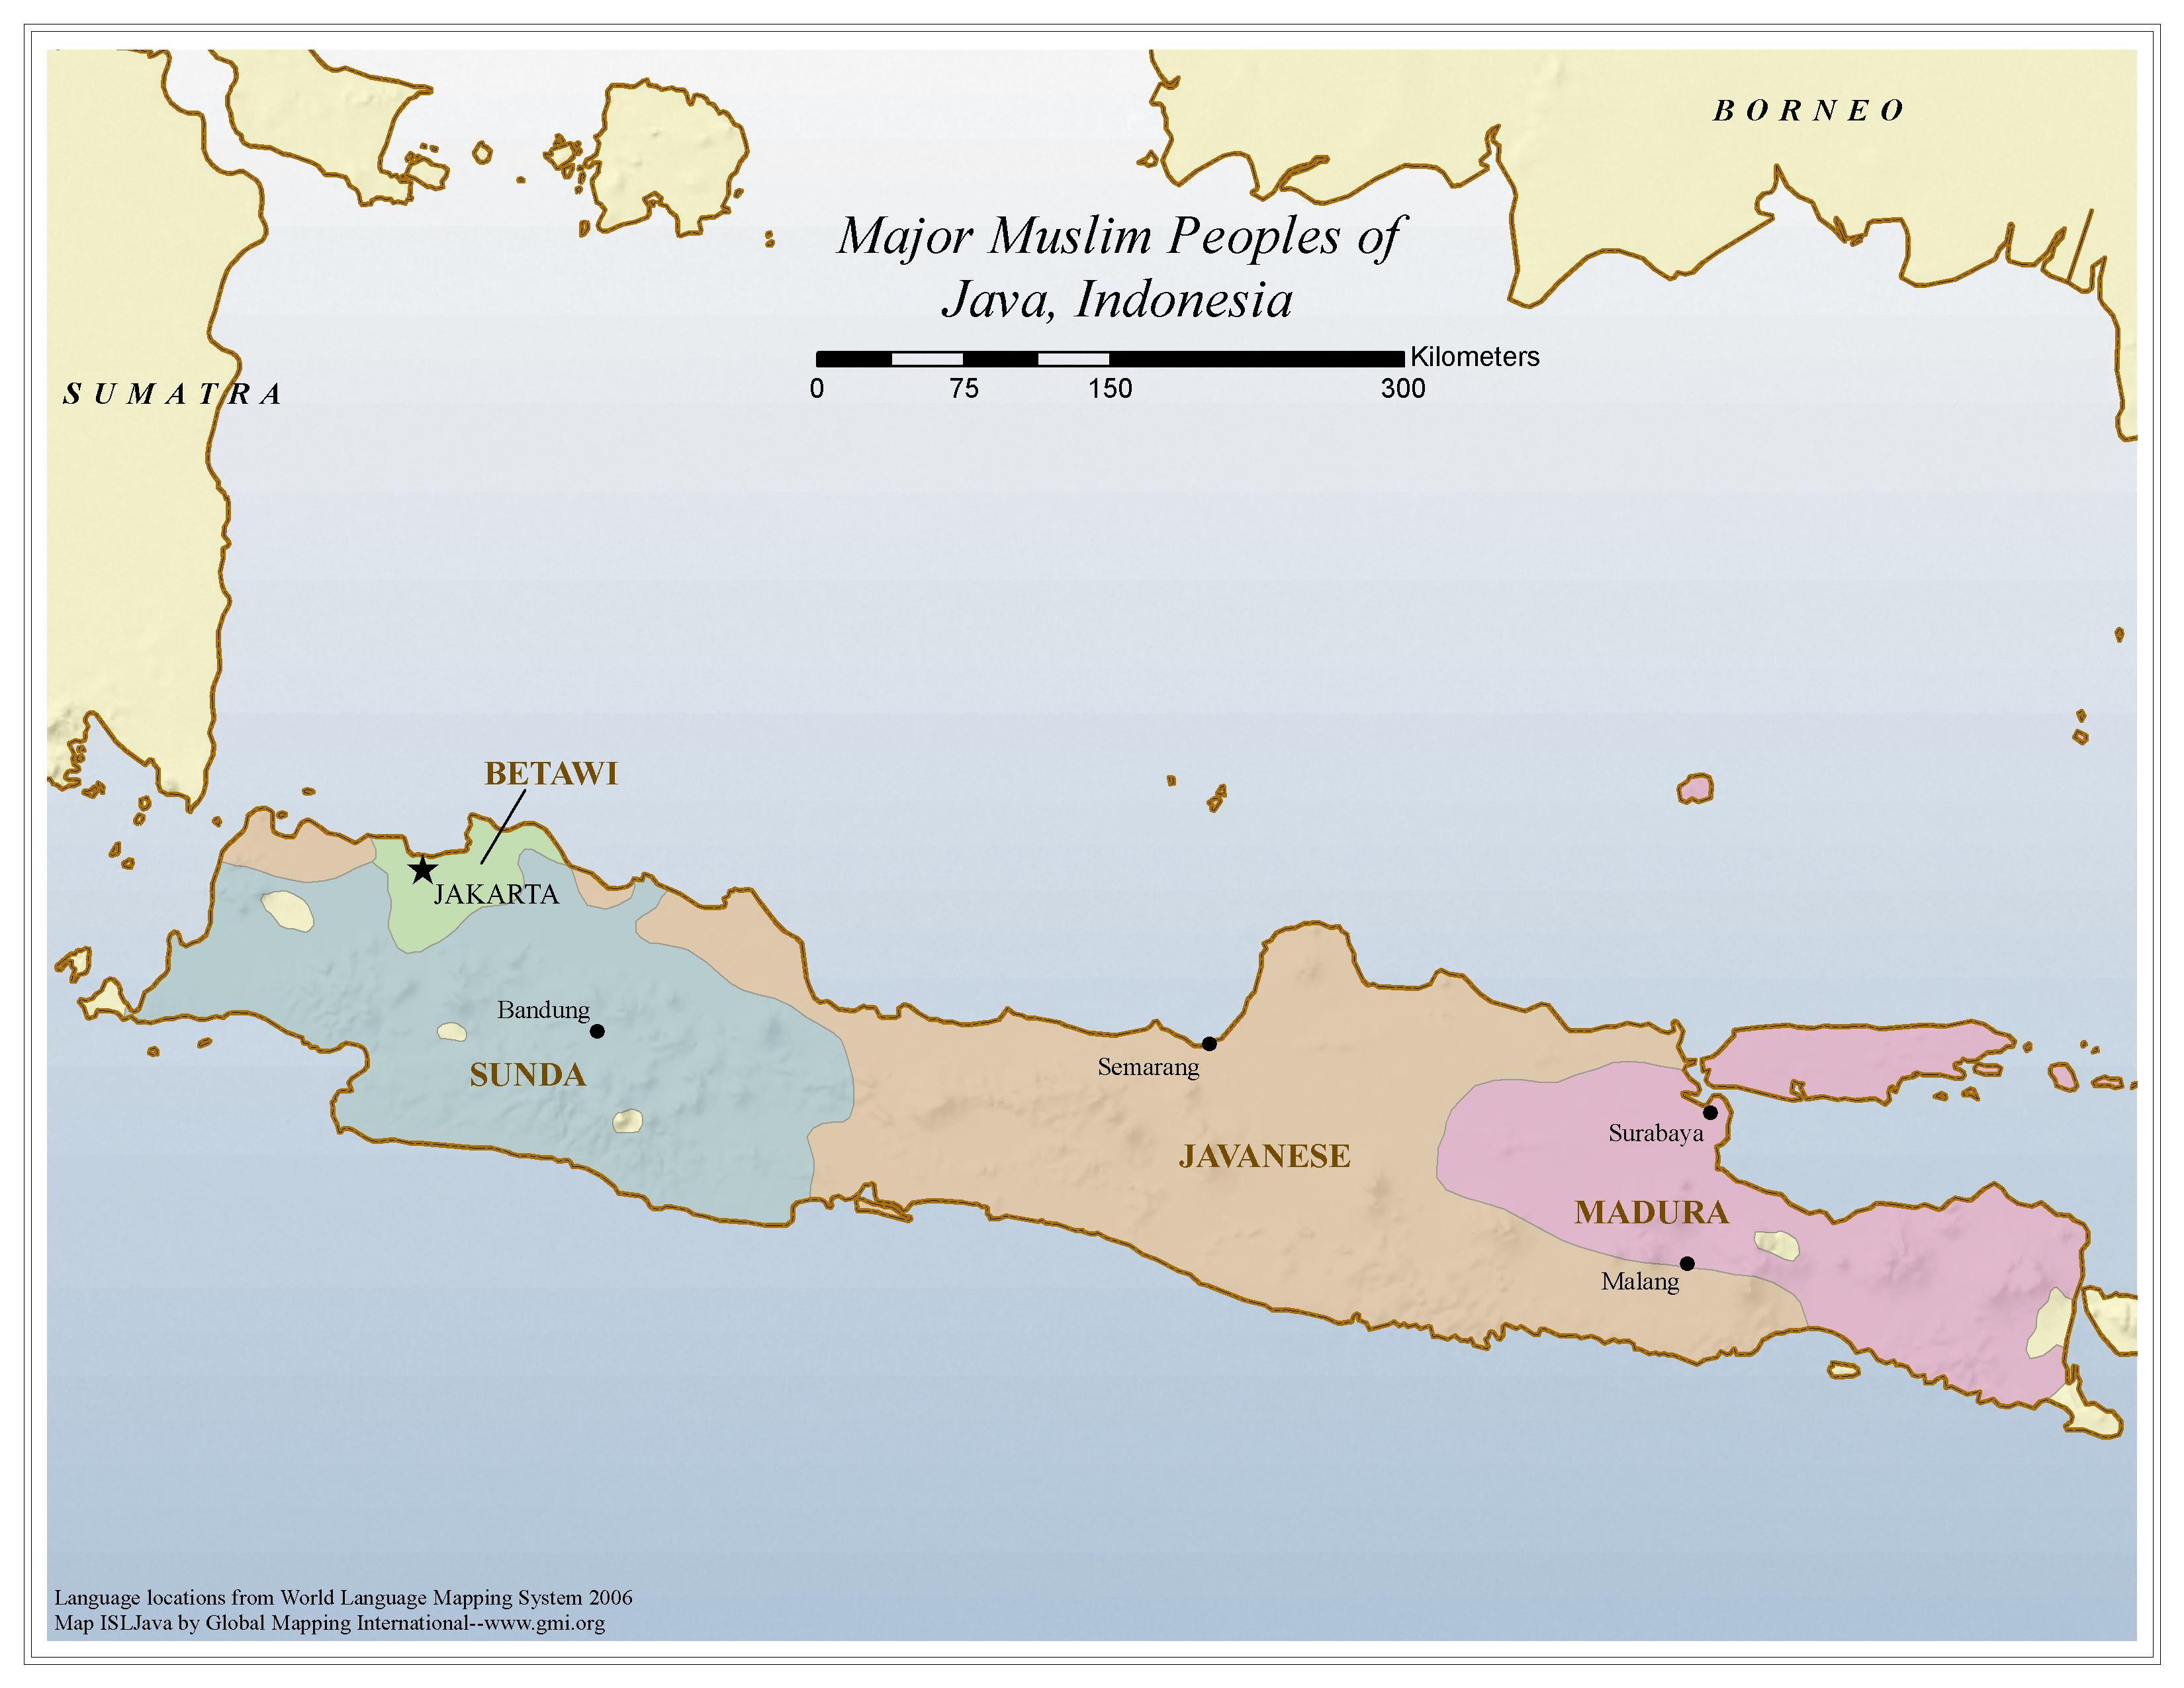 Major Muslim Peoples of Java, Indonesia